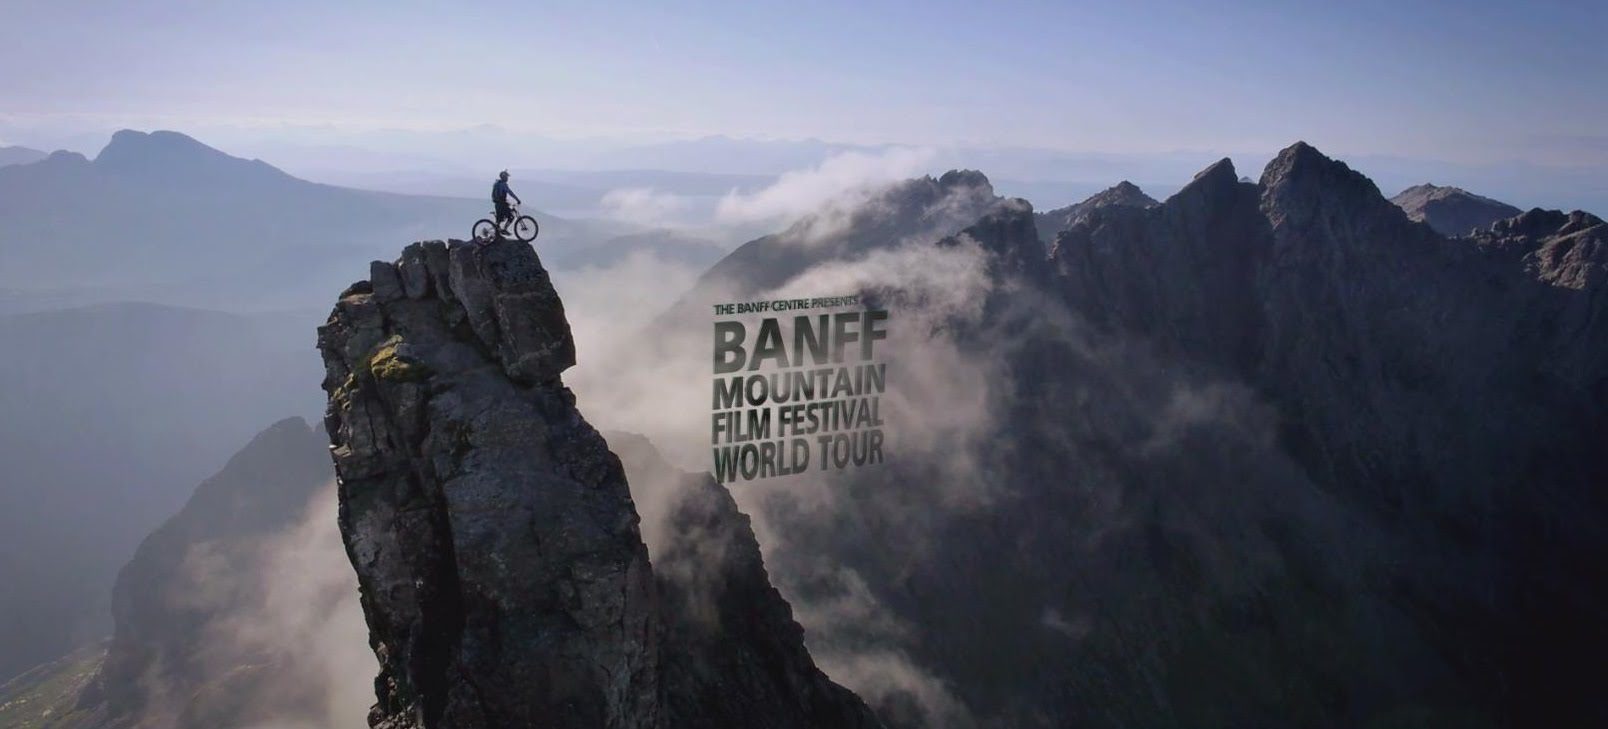 Banff mountain film festival world tour